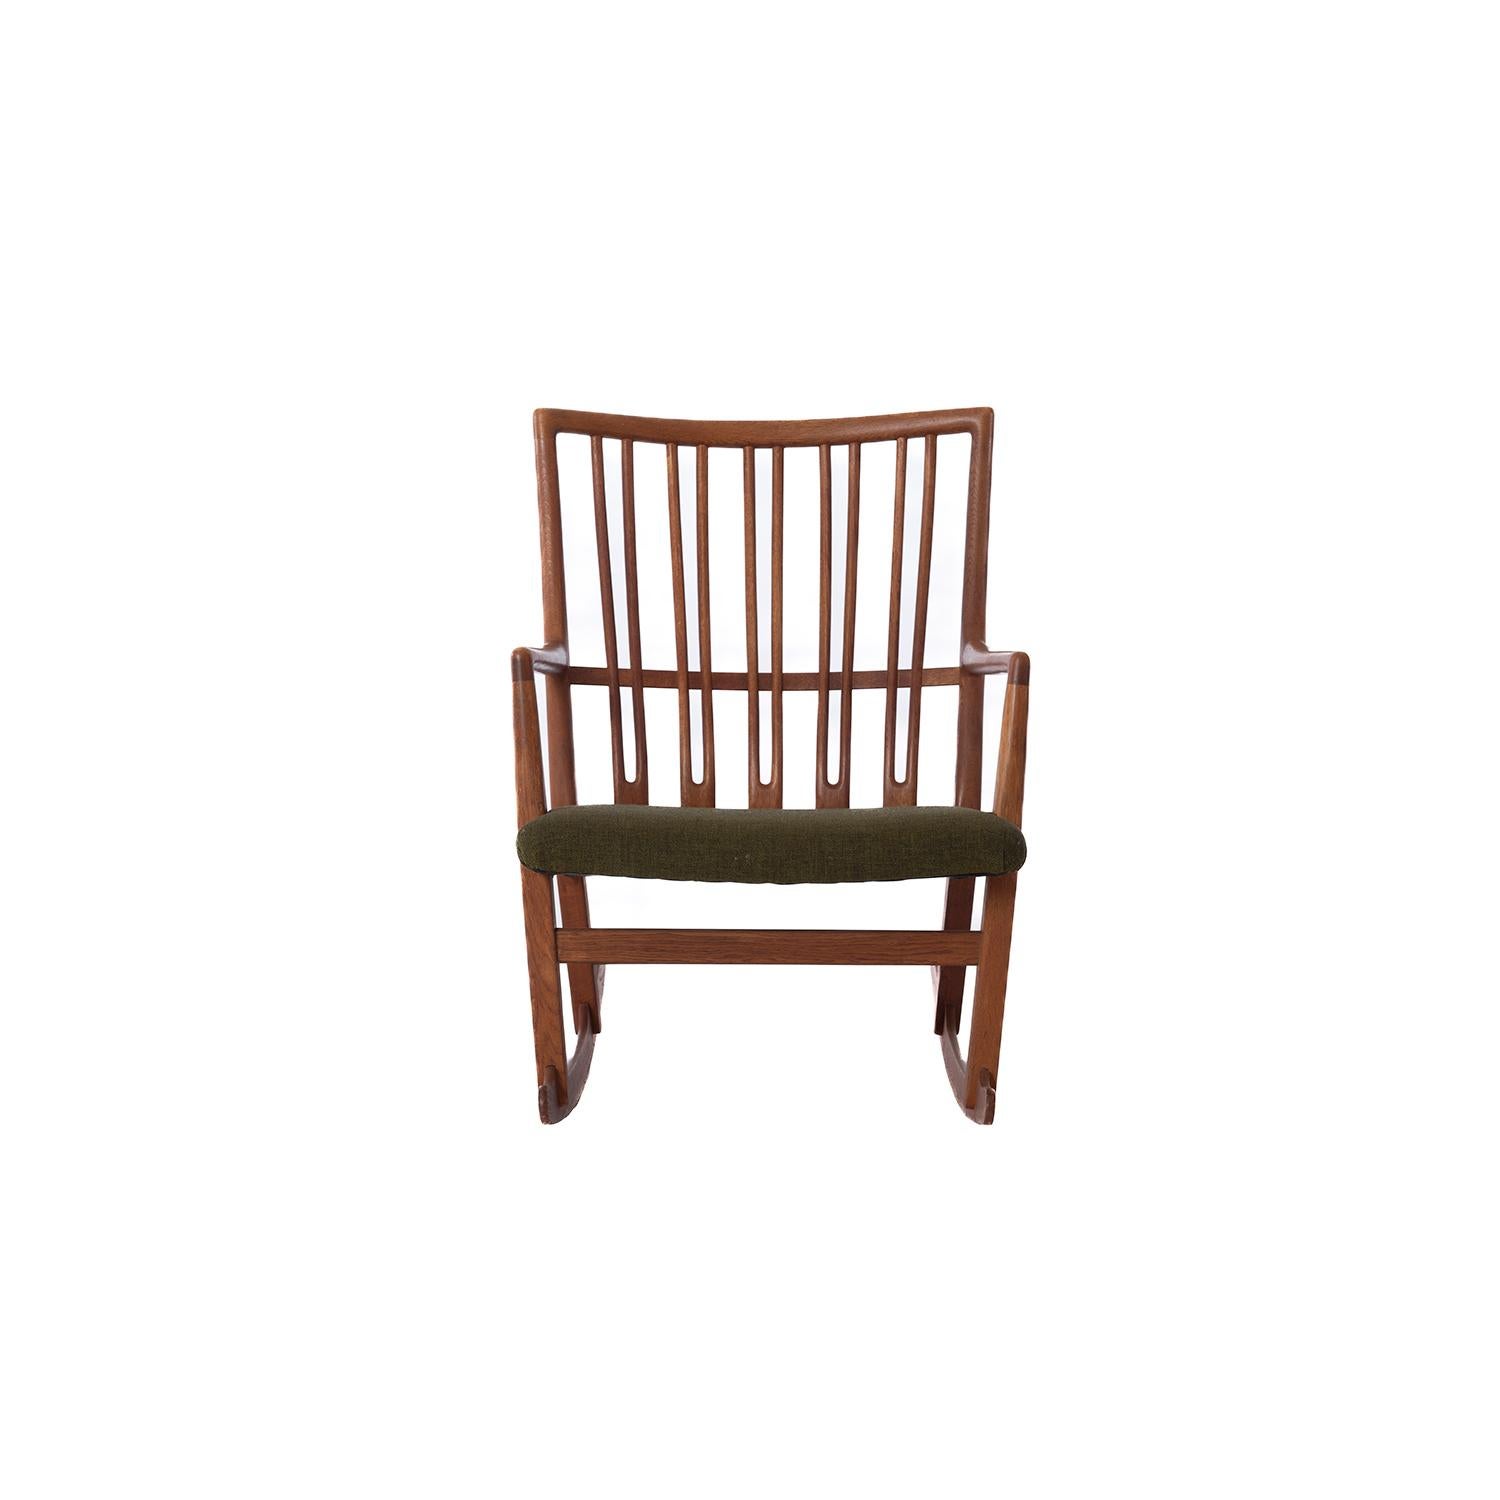 Chaise à bascule en chêne conçue par Hans J. Wegner et produite par Mikael Laursen. Un des premiers modèles de fauteuil à bascule conçu par le célèbre architecte danois. Le chêne a une riche patine. Tapissé de laine verte. 

La restauration